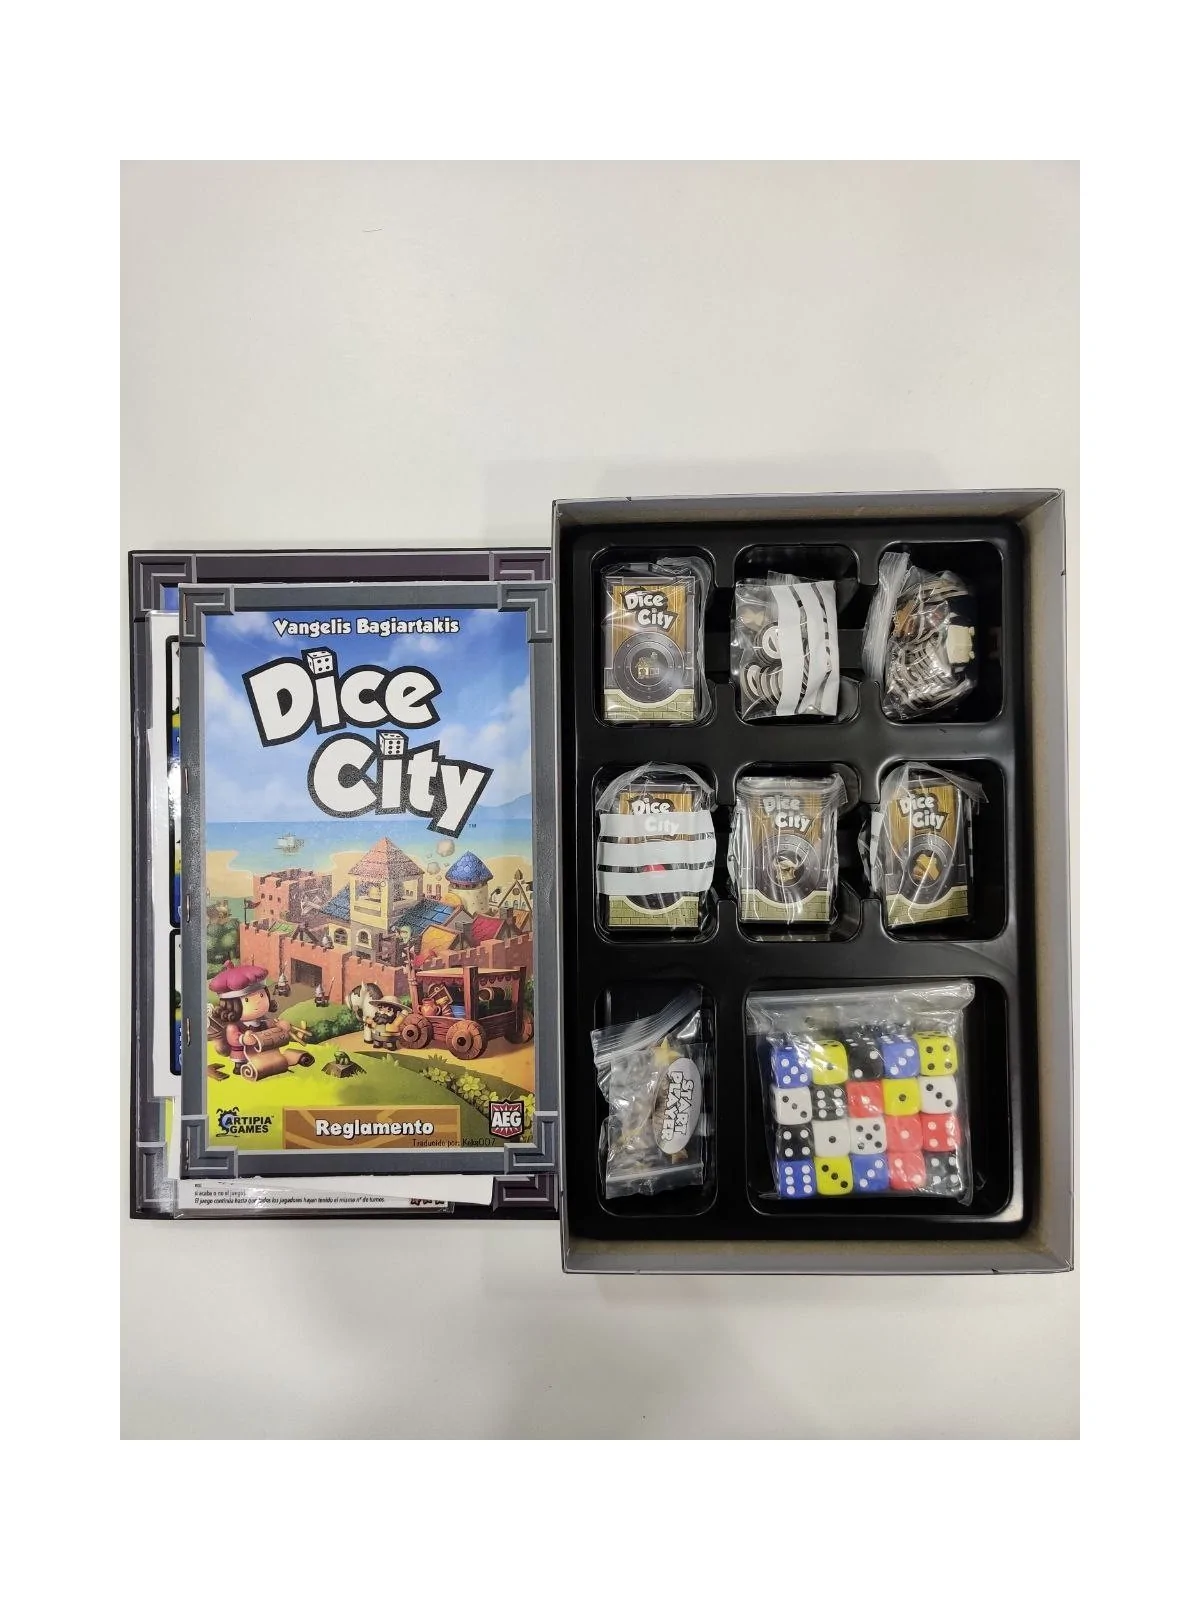 Comprar Dice City (Ingles) (Con Traducción) [SEGUNDA MANO] barato al m